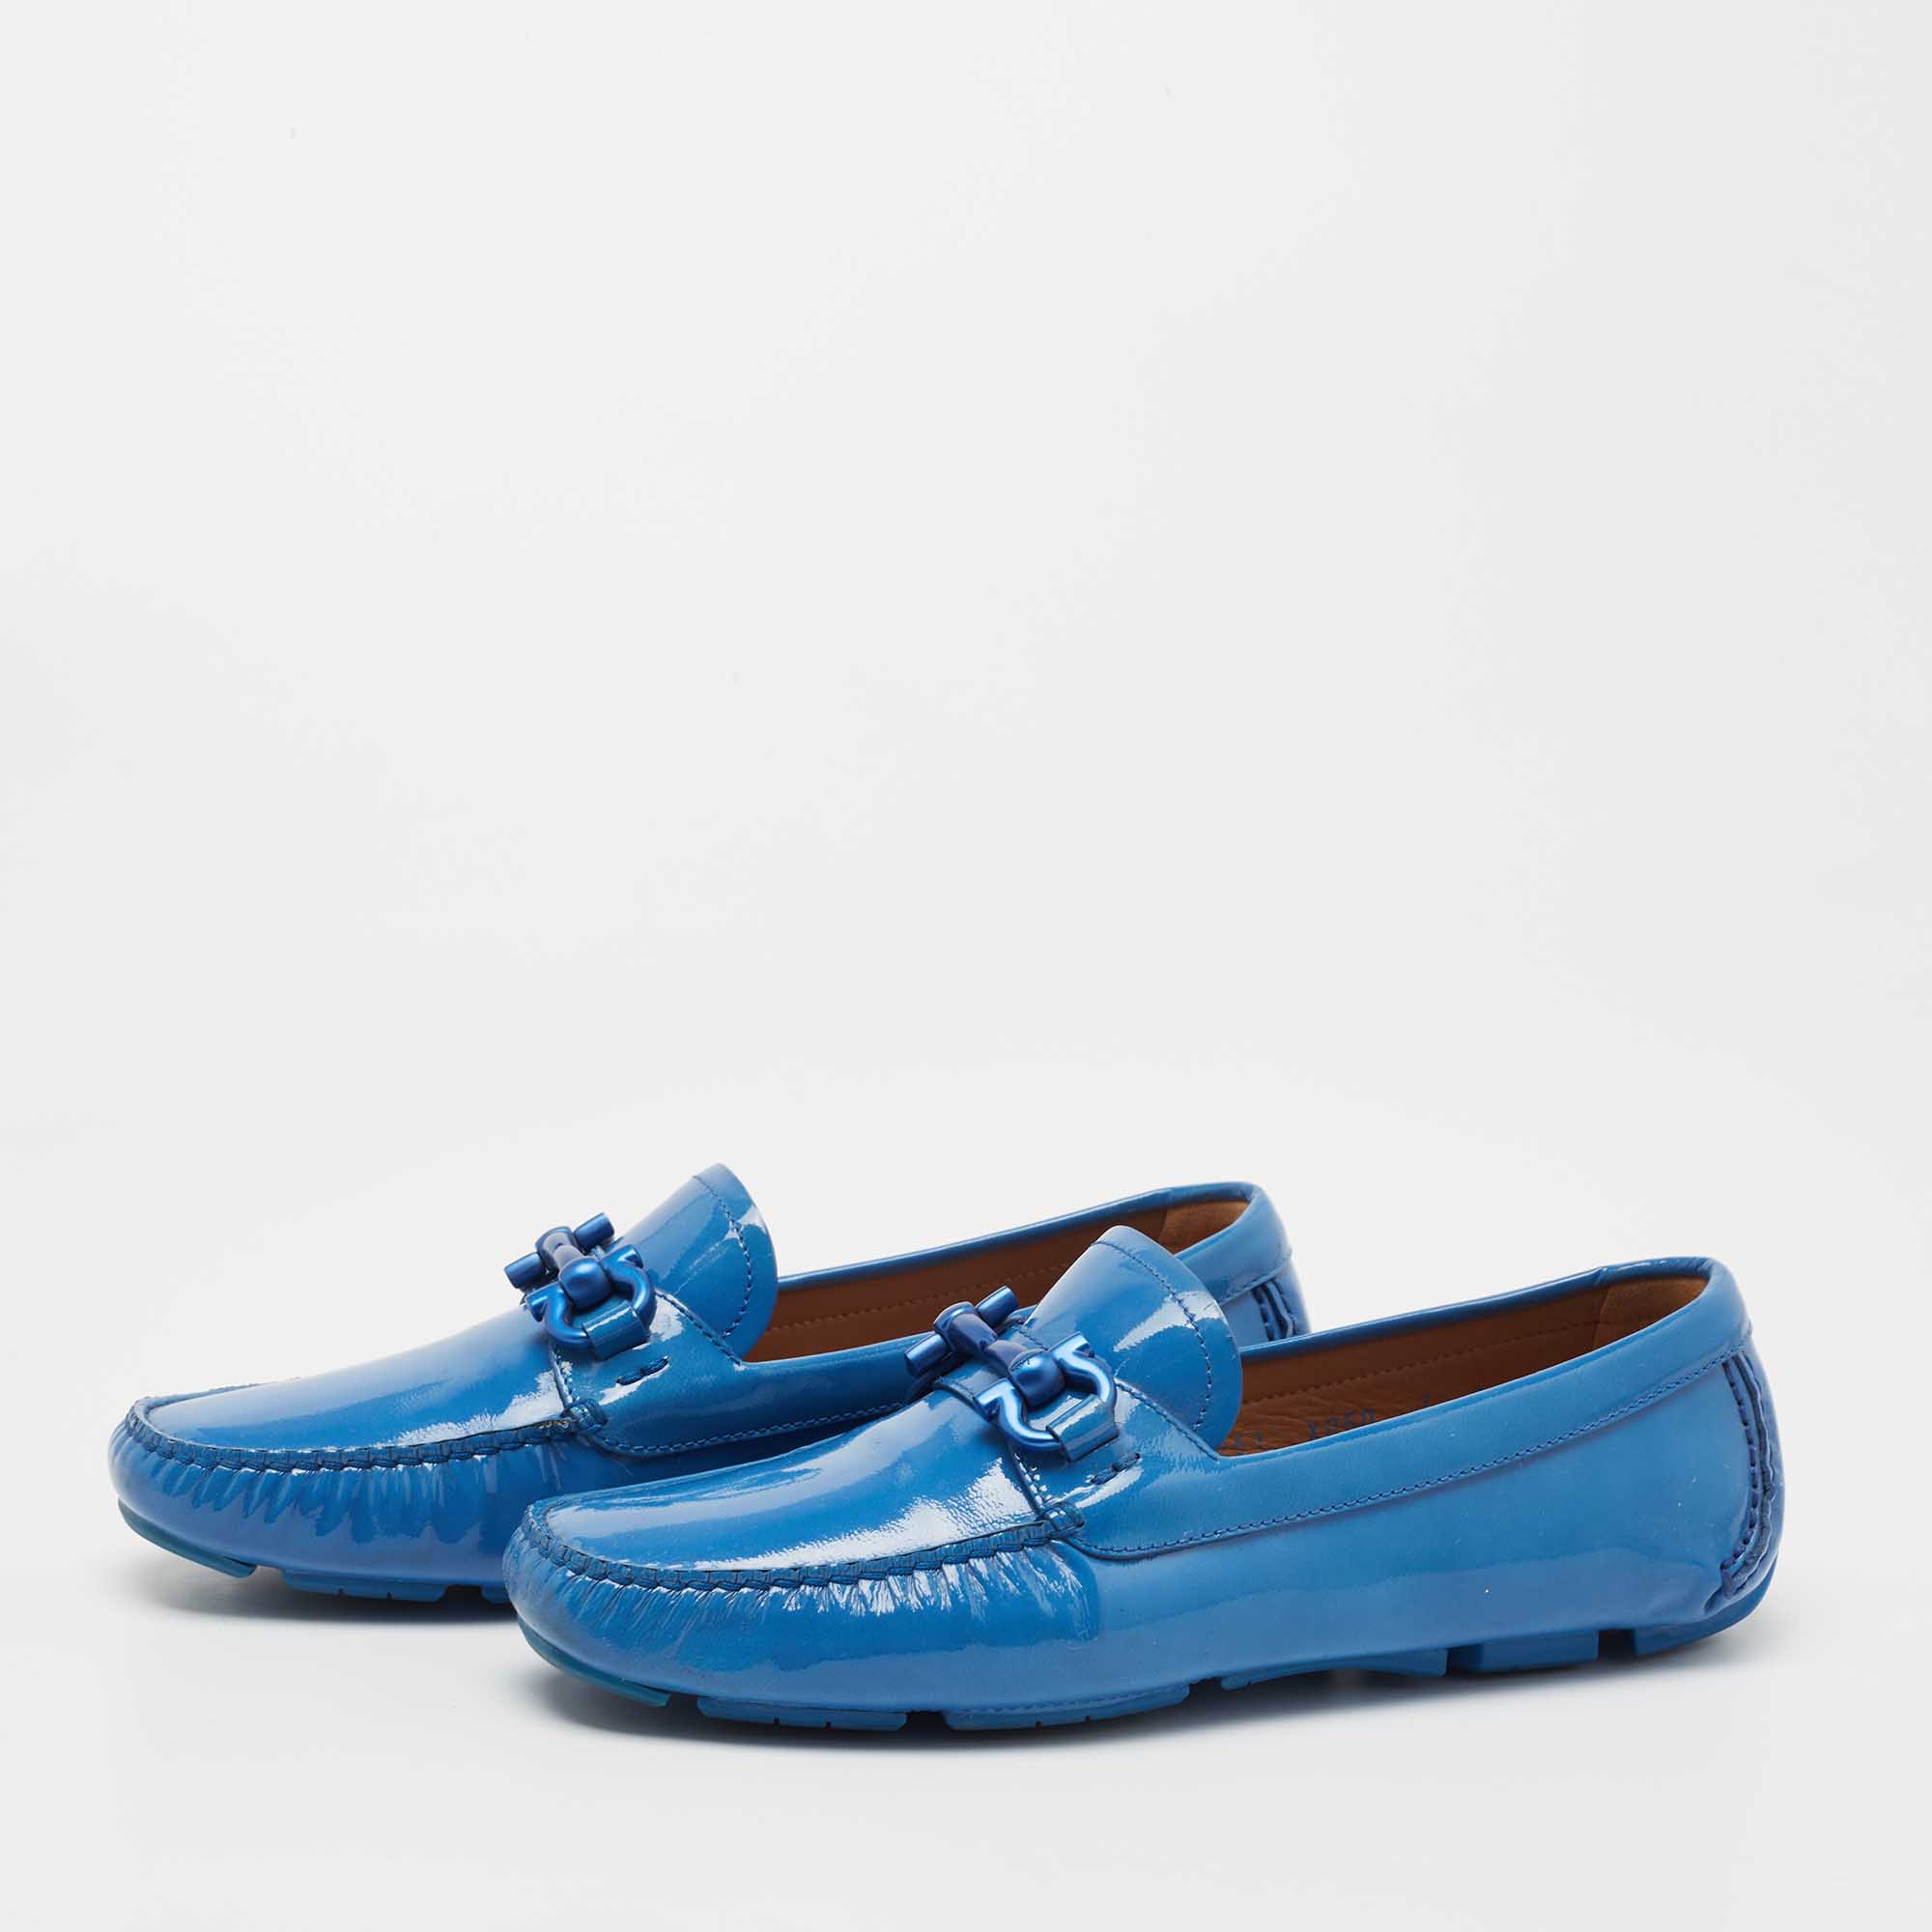 

Salvatore Ferragamo Blue Patent Leather Gancio Loafers Size